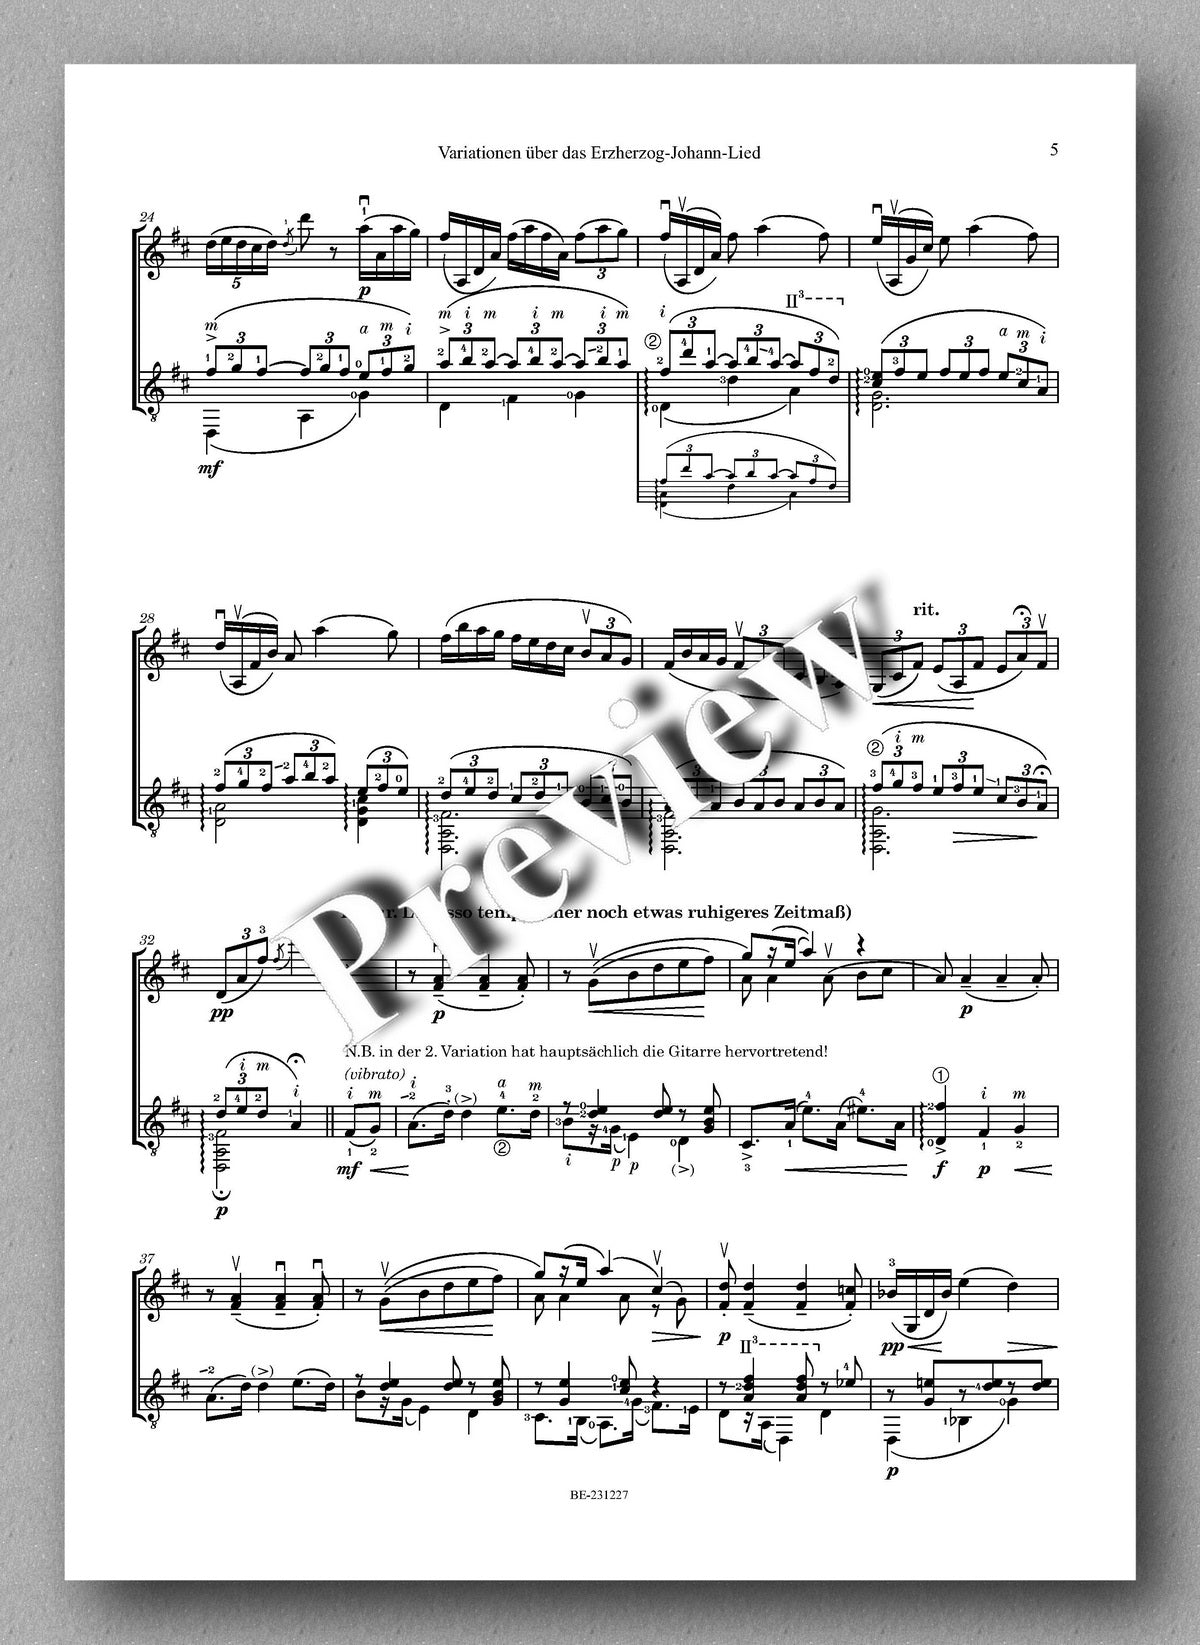 Ferdinand Rebay, Variationen über das ErzherzogJohann-Lied - preview of the music score 2